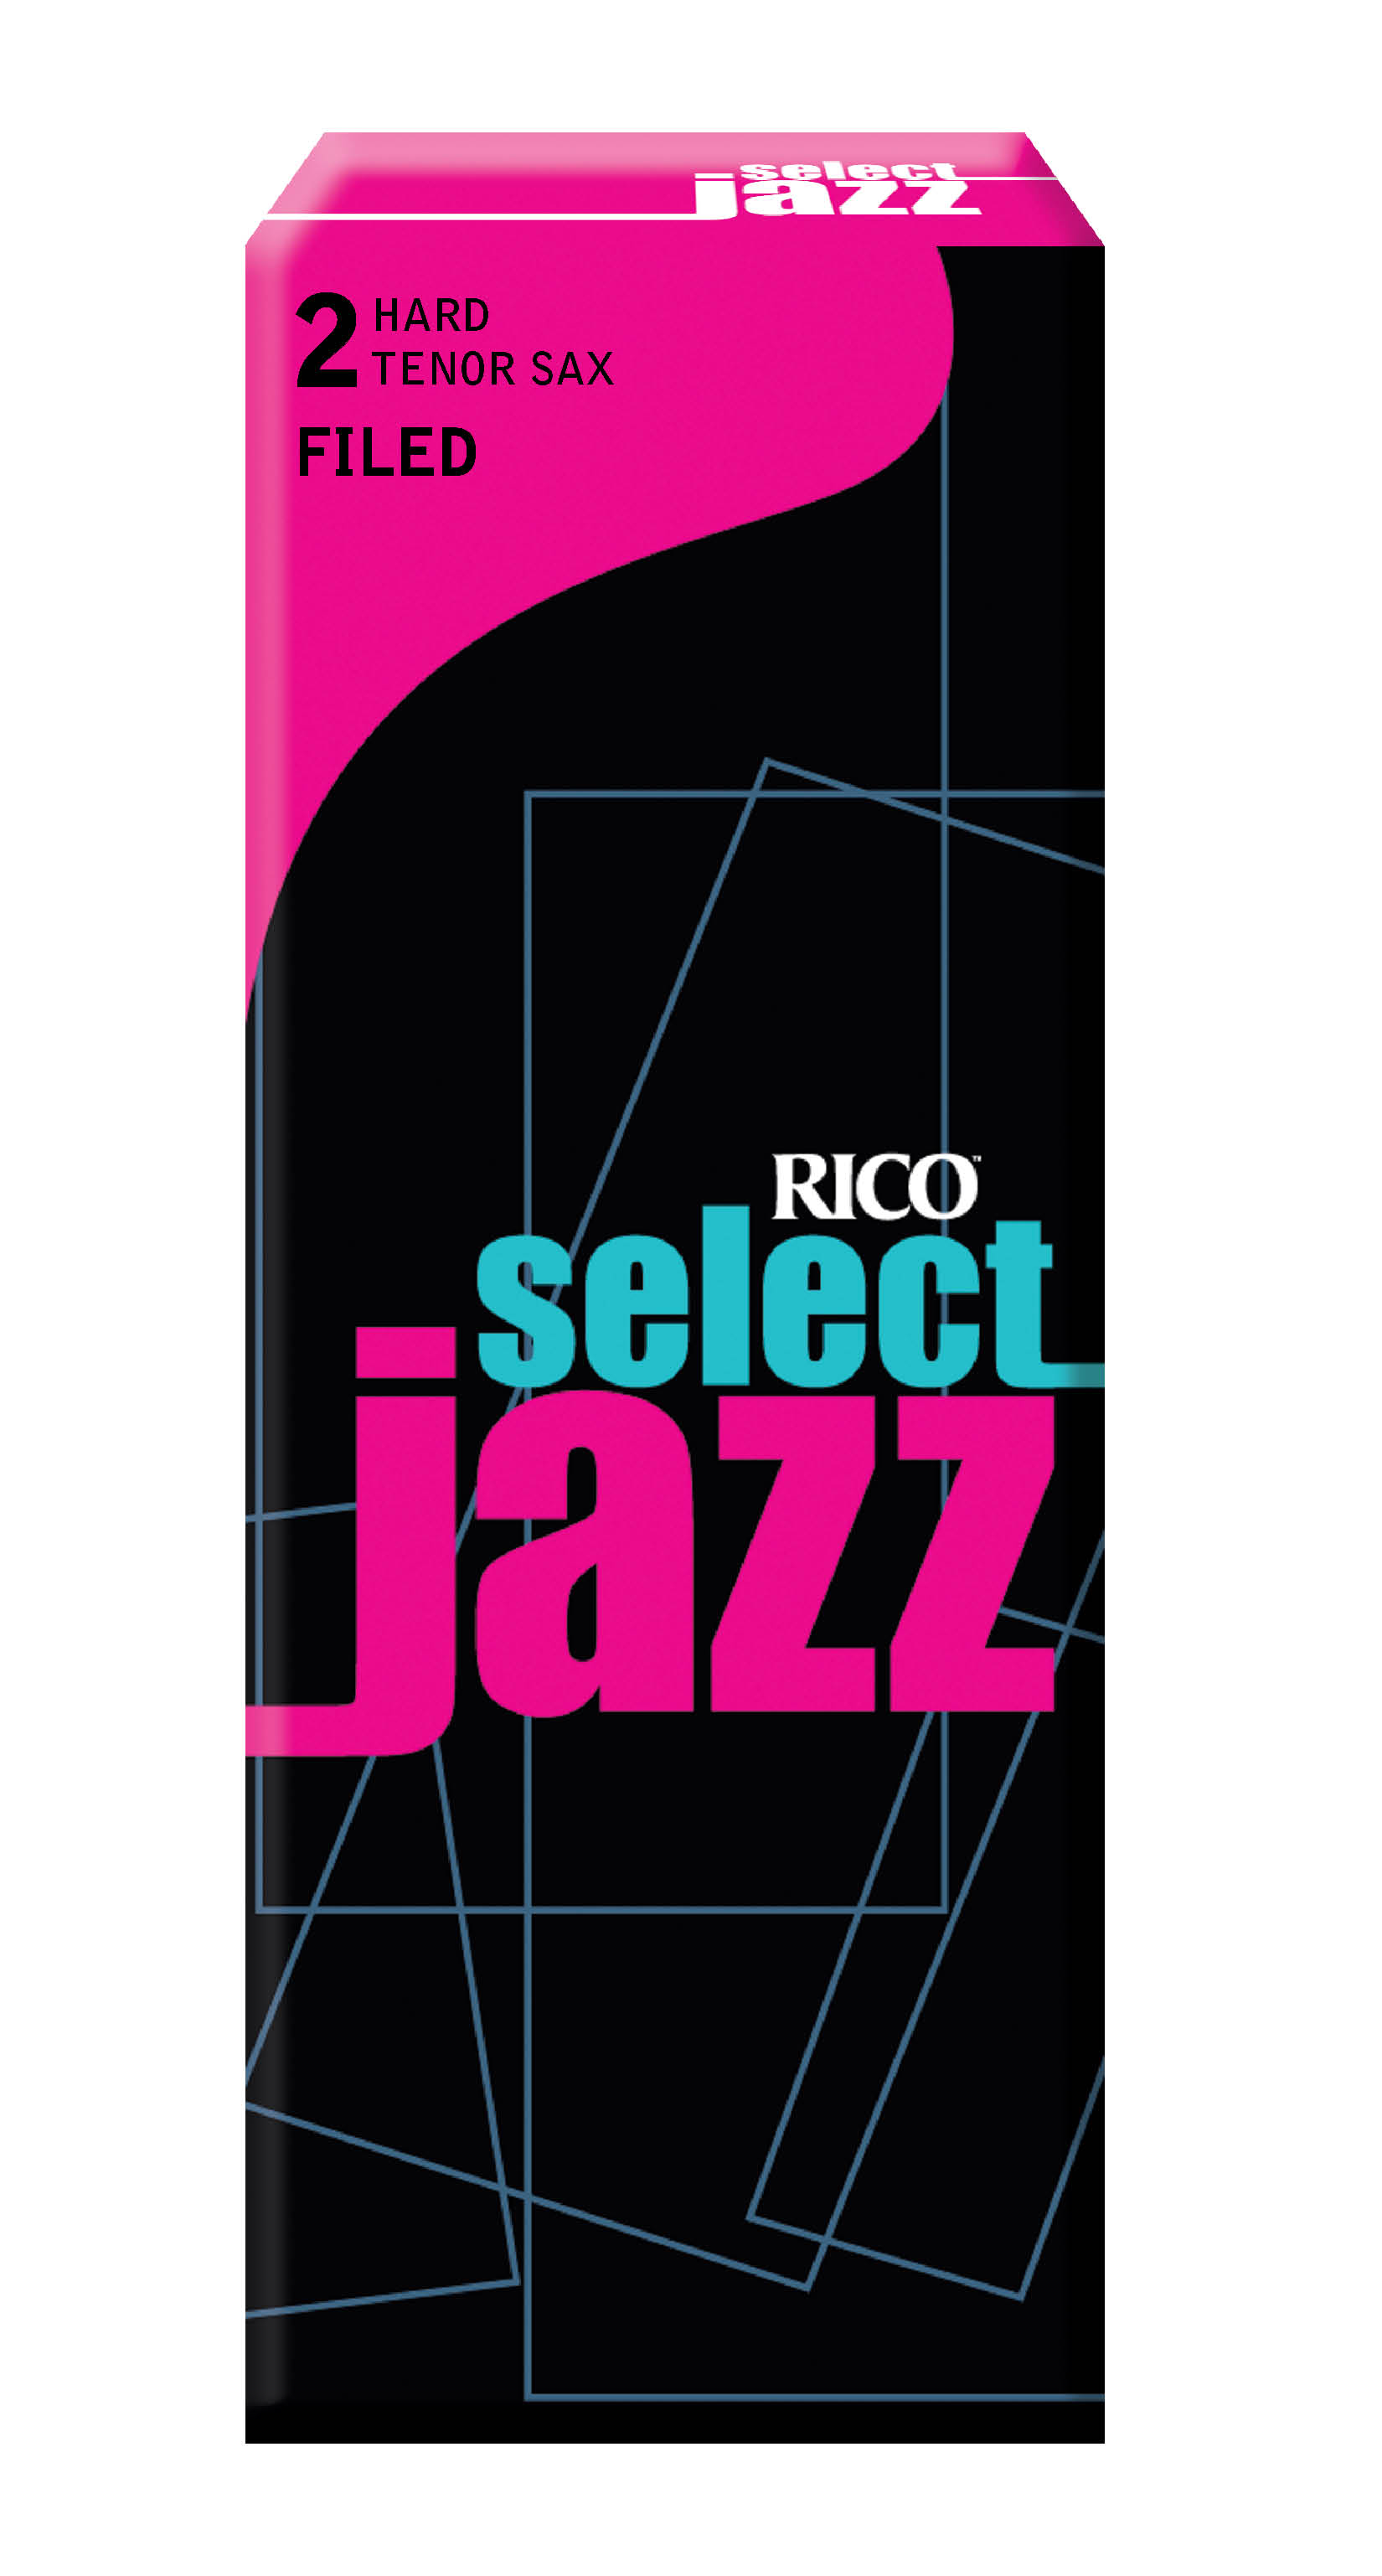 D'Addario Select Jazz Filed Tenor Saxophone Reeds, Strength 2 Hard, 5-pack